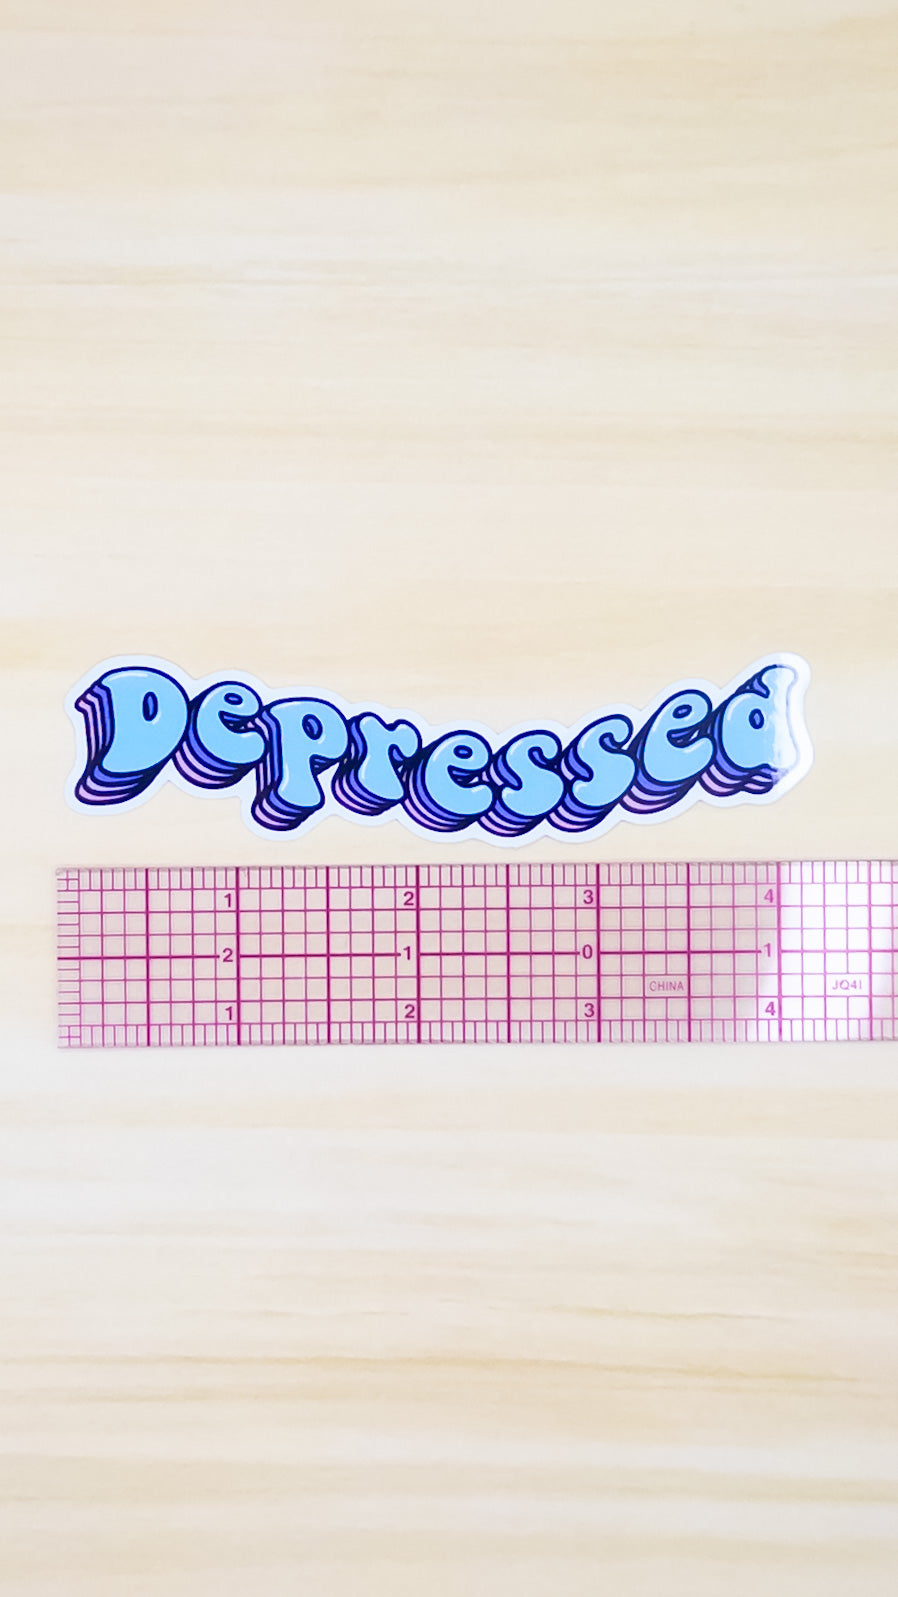 Depressed Vinyl Sticker 4 inch